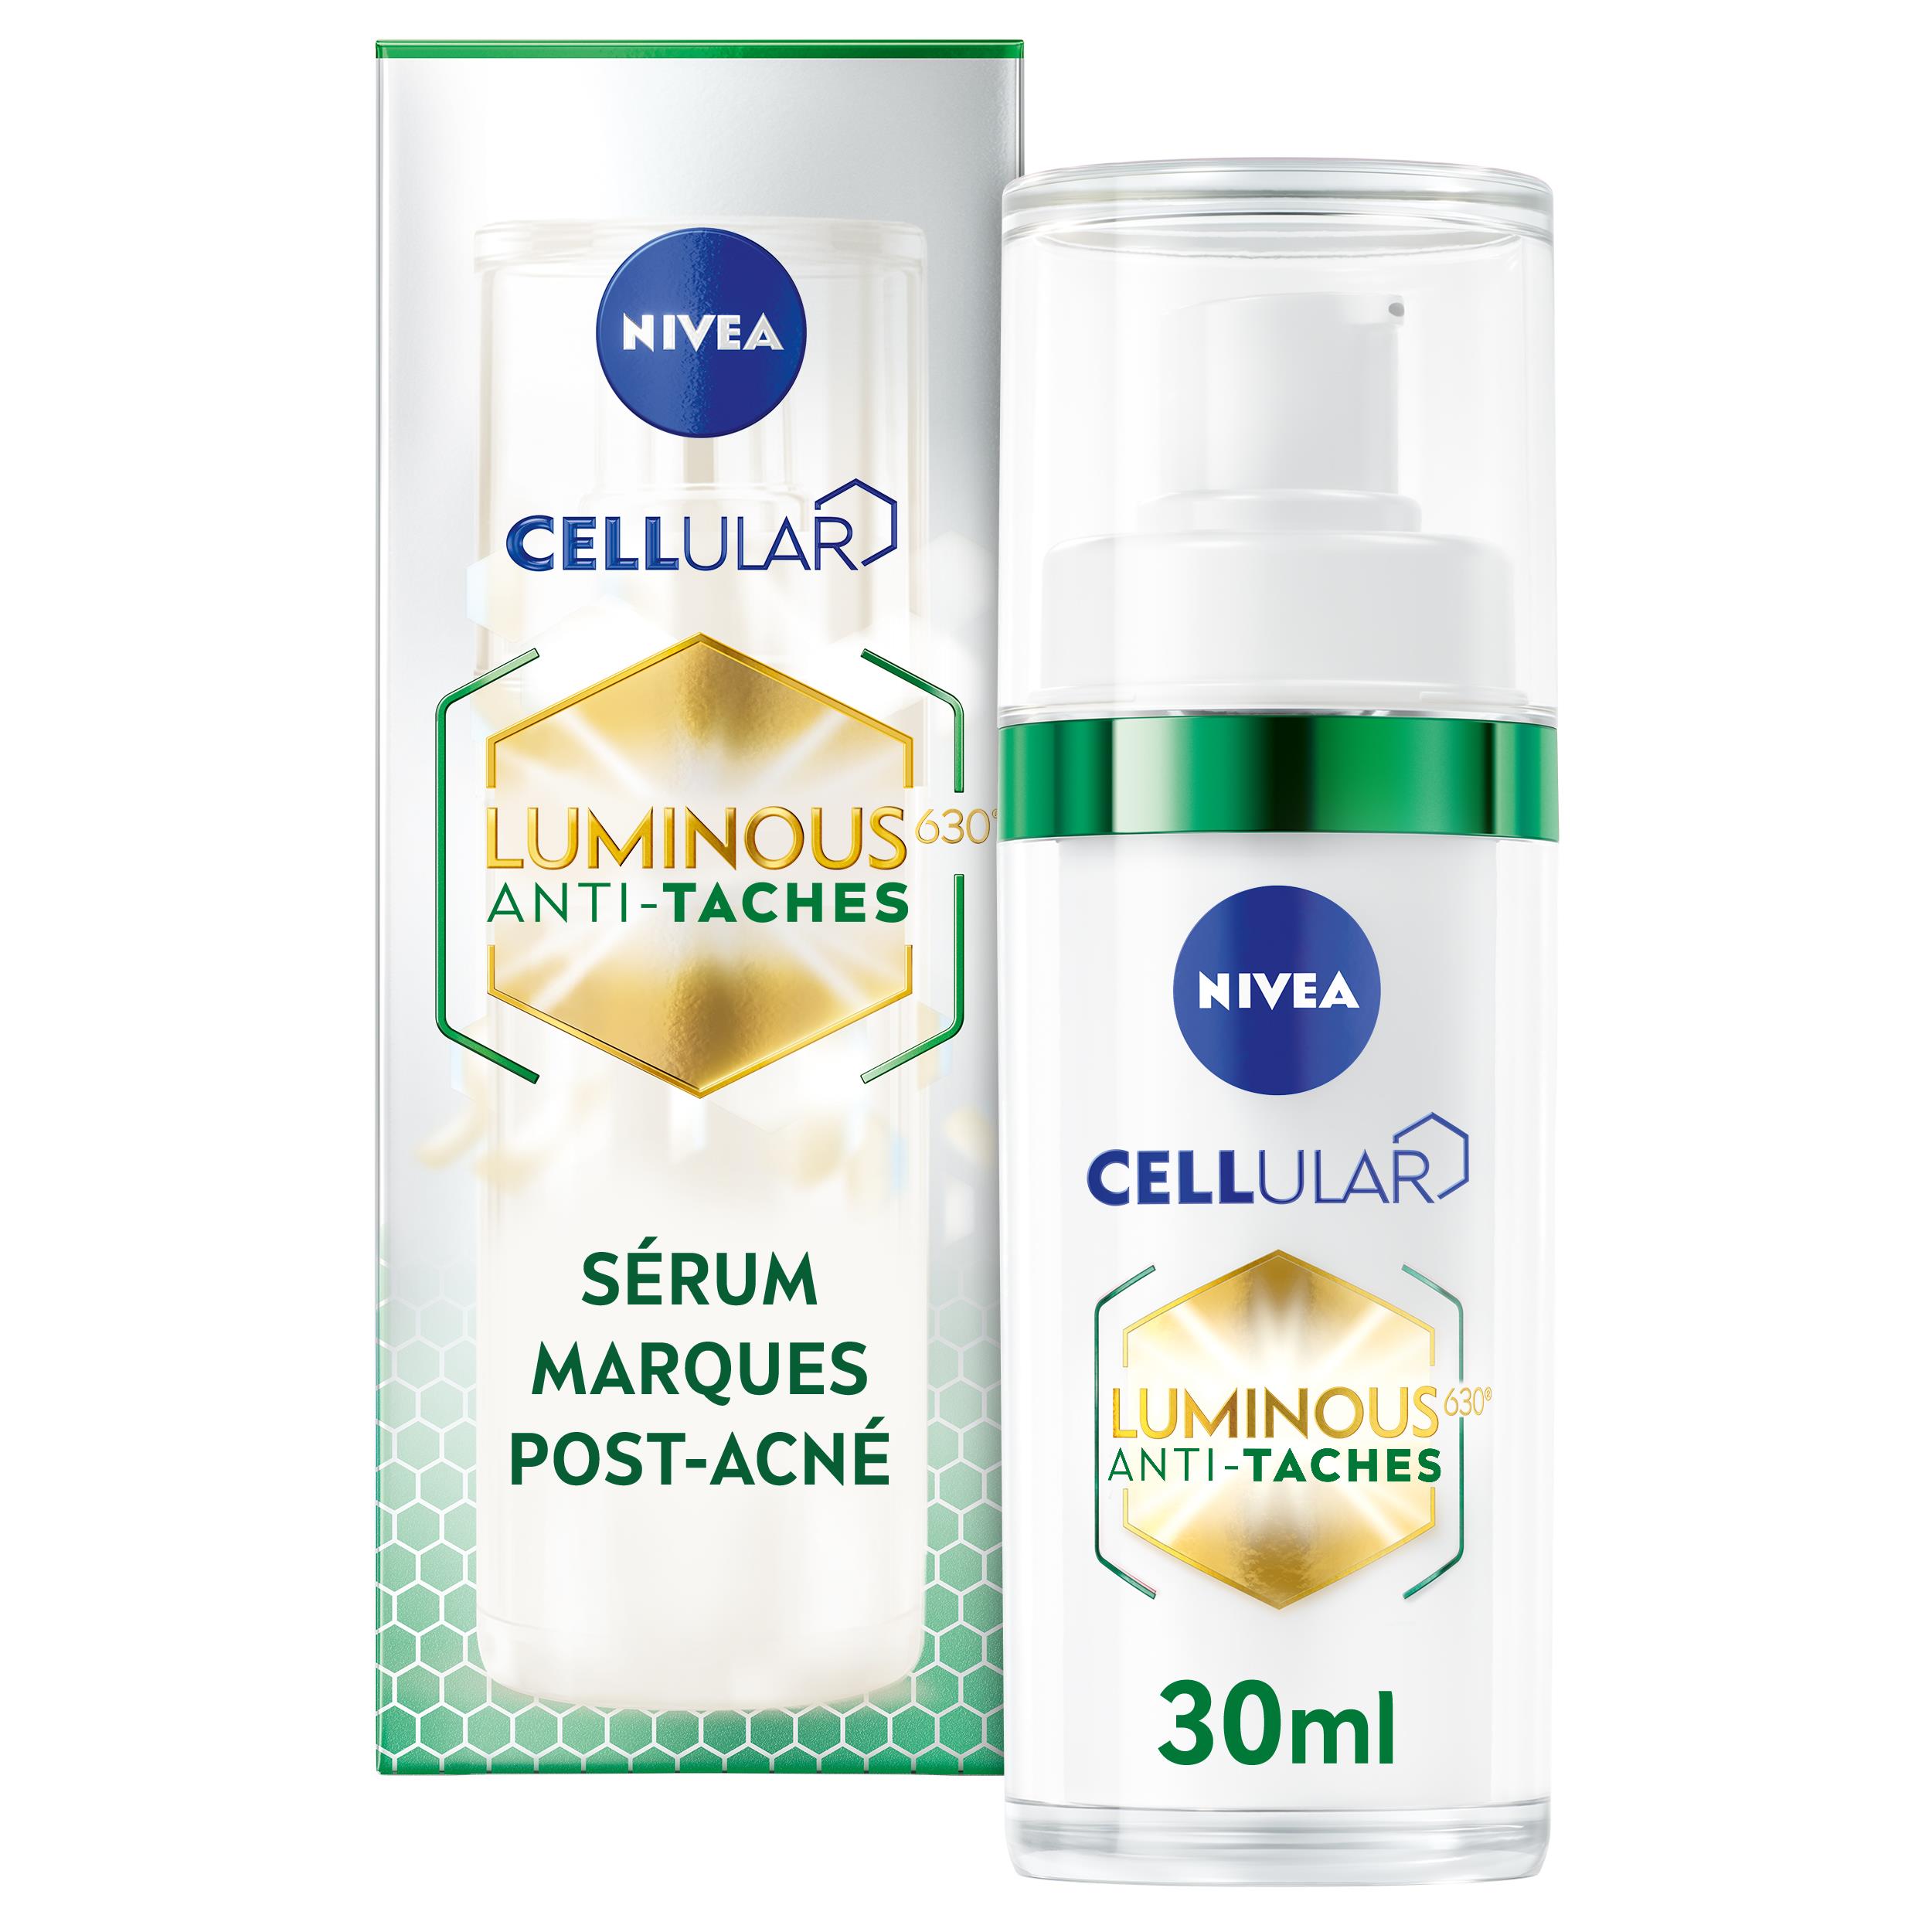 Nivea Sérum marques post-acné Cellular Luminous 630 le flacon de 30ml